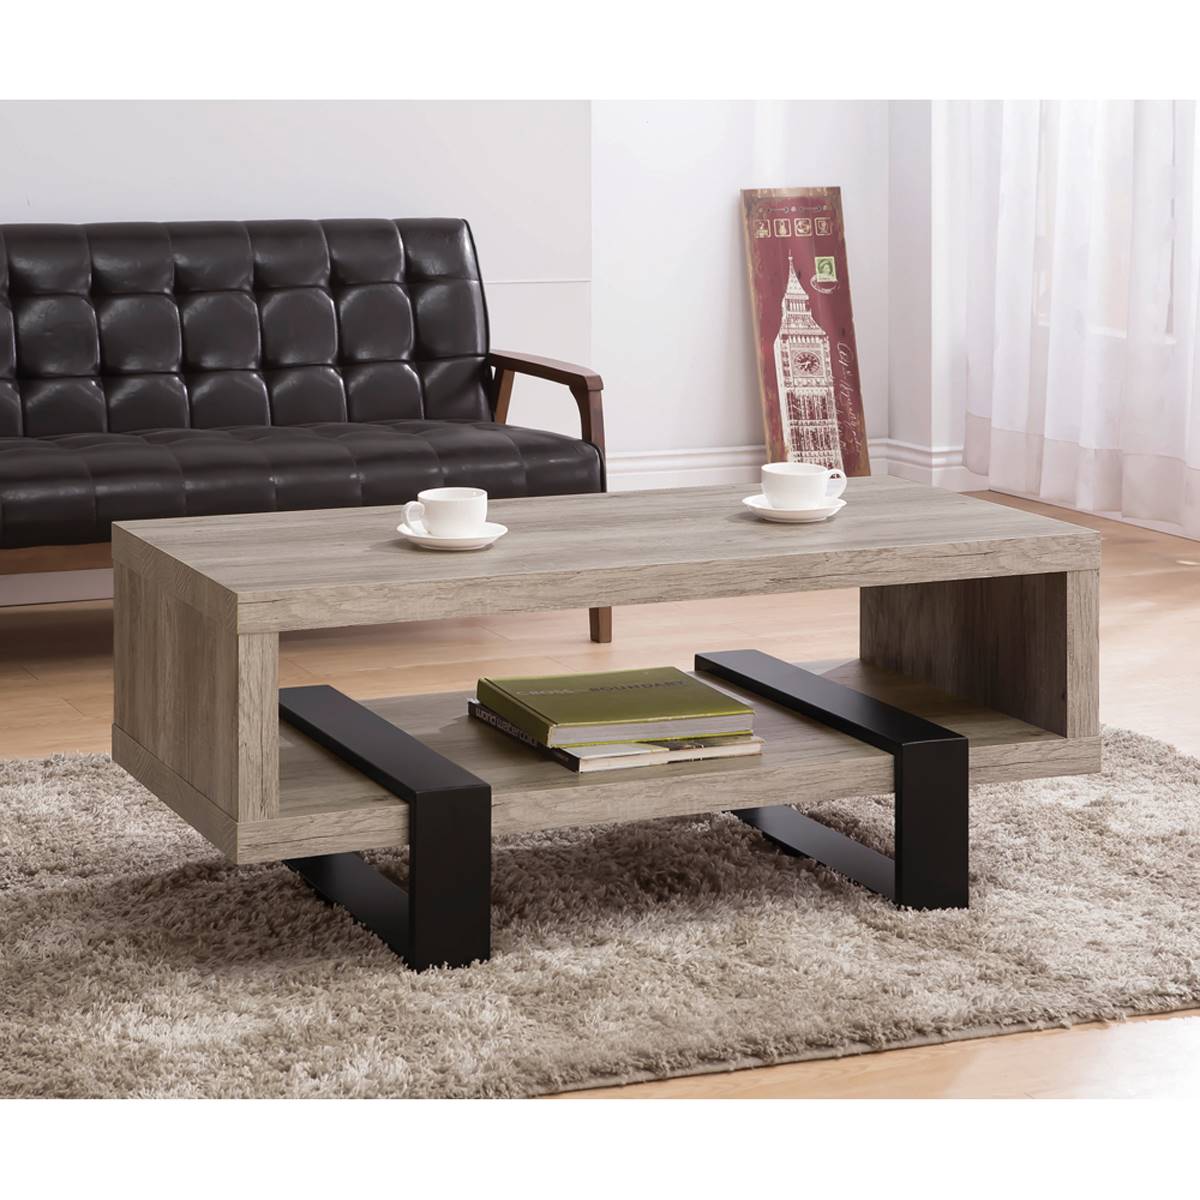 Coaster Coffee Table W/ Shelf - Grey Driftwood